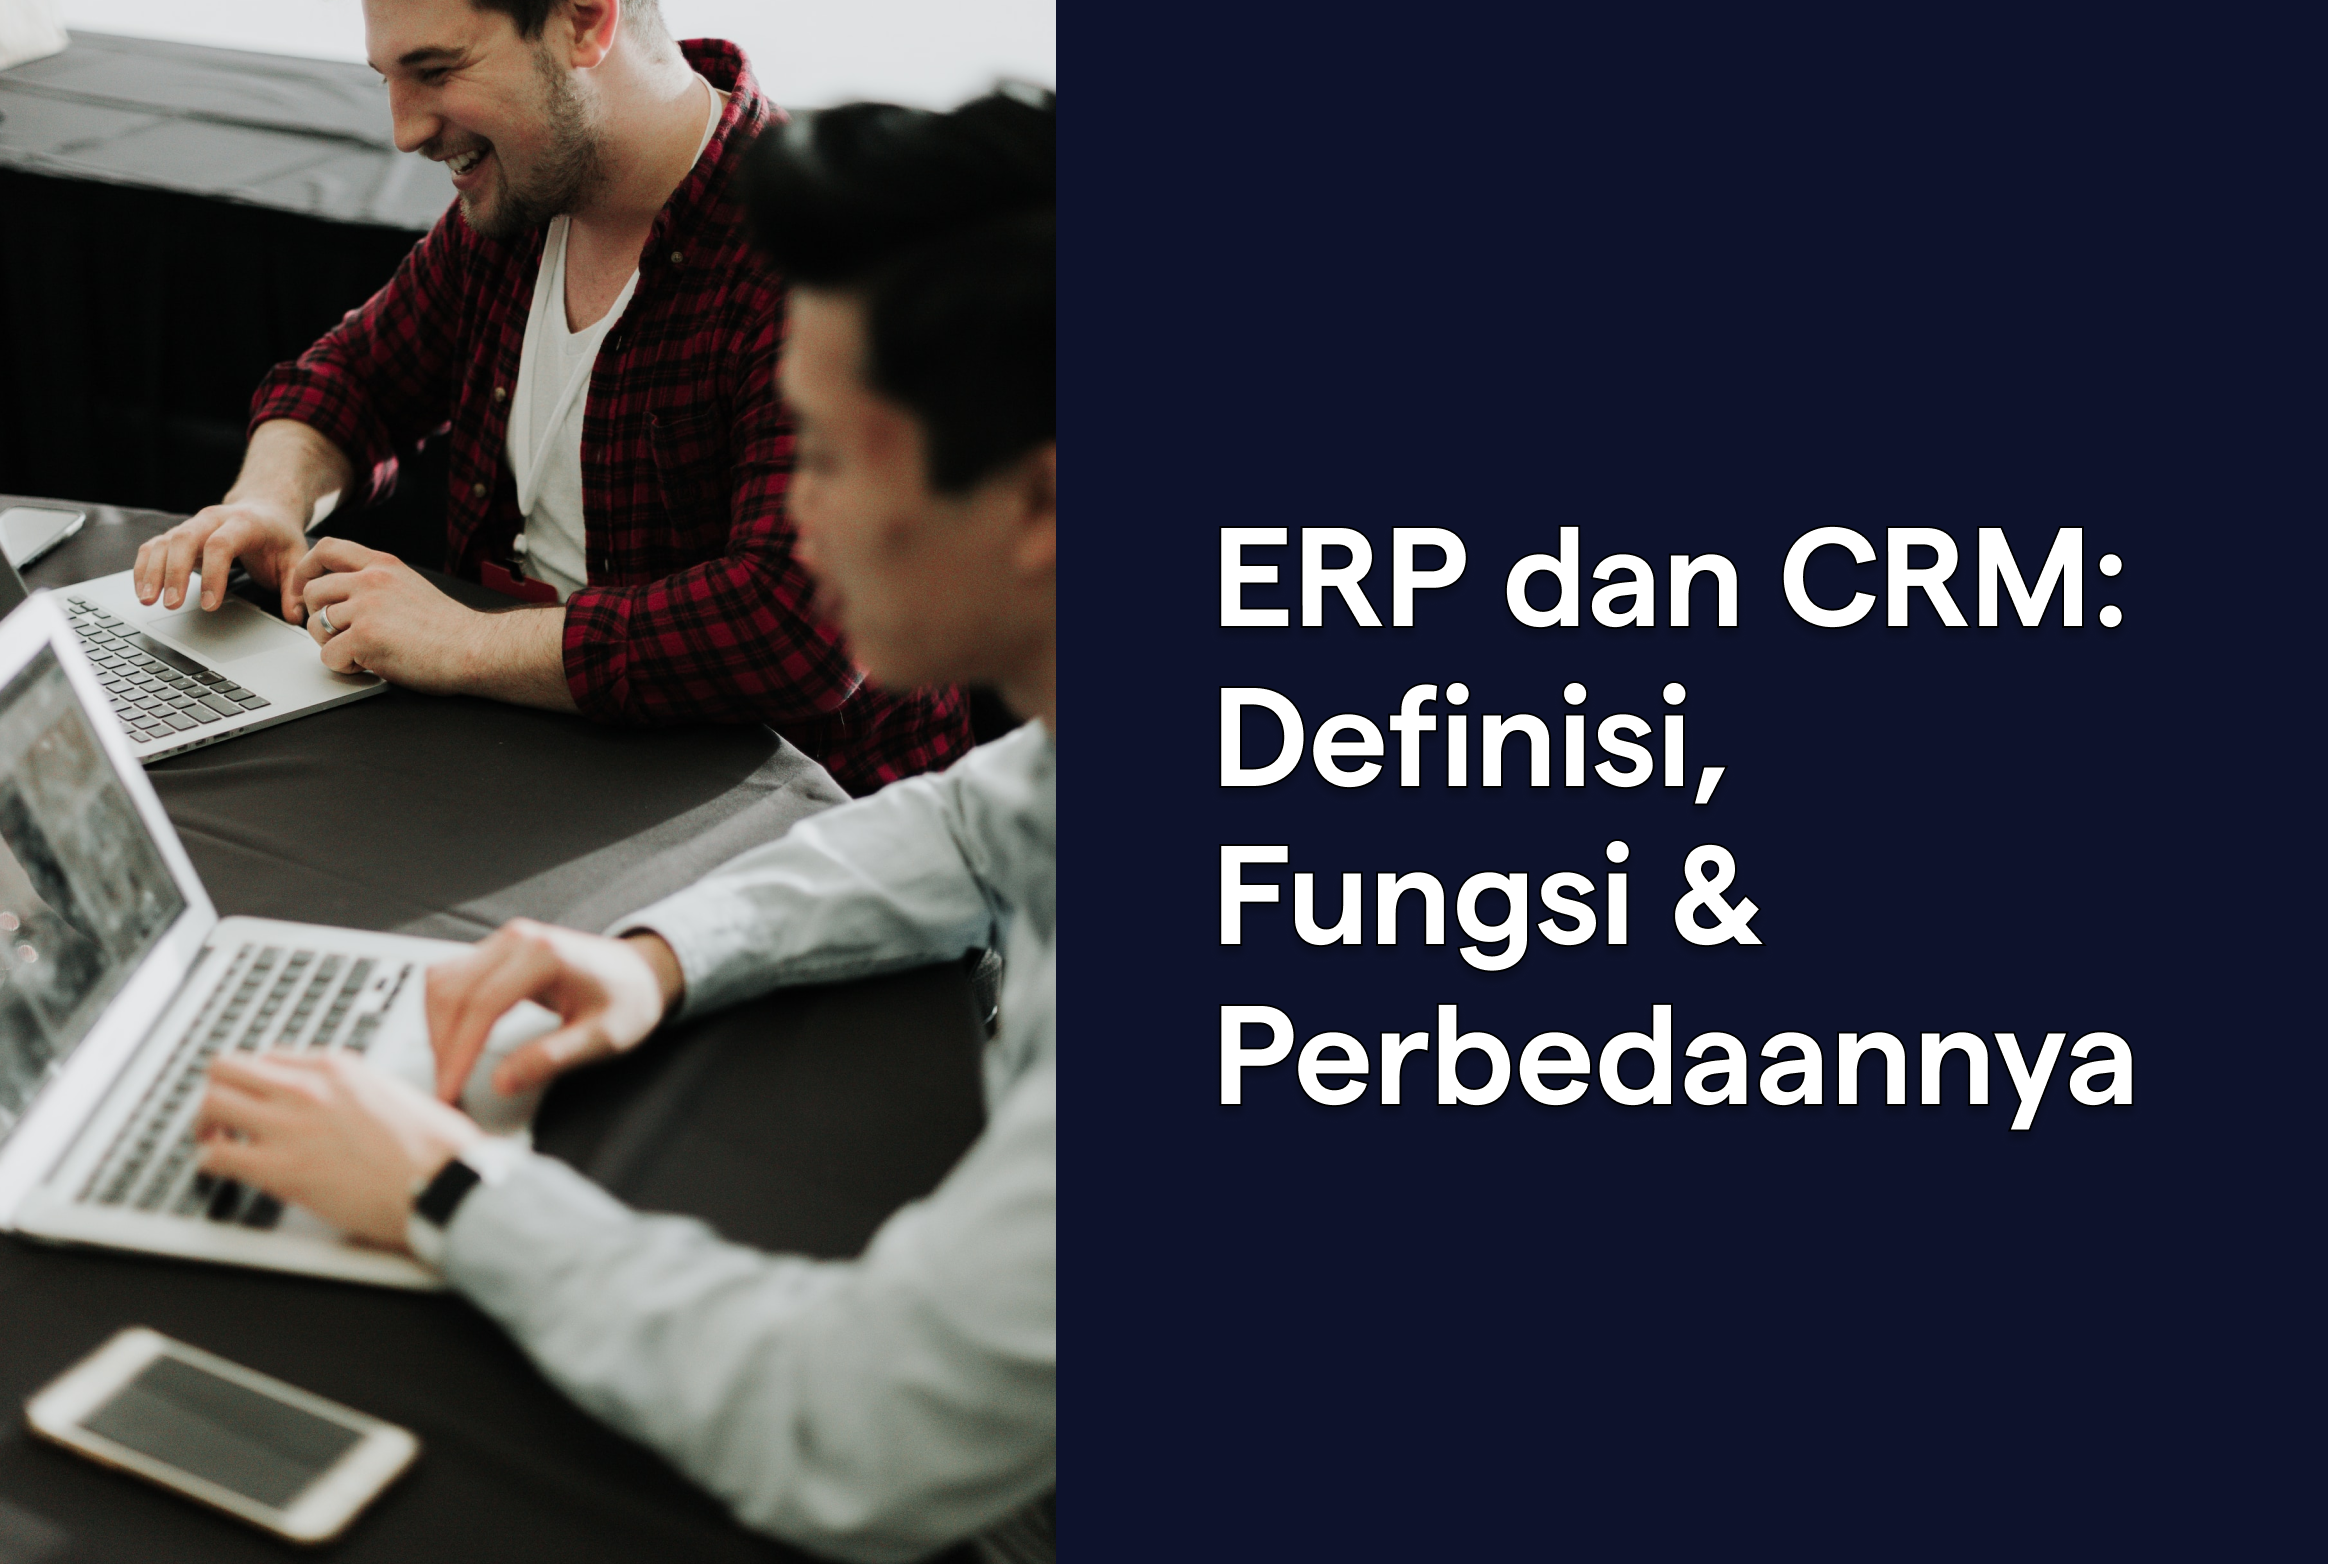 ERP dan CRM: Definisi, Fungsi, dan Perbedaannya